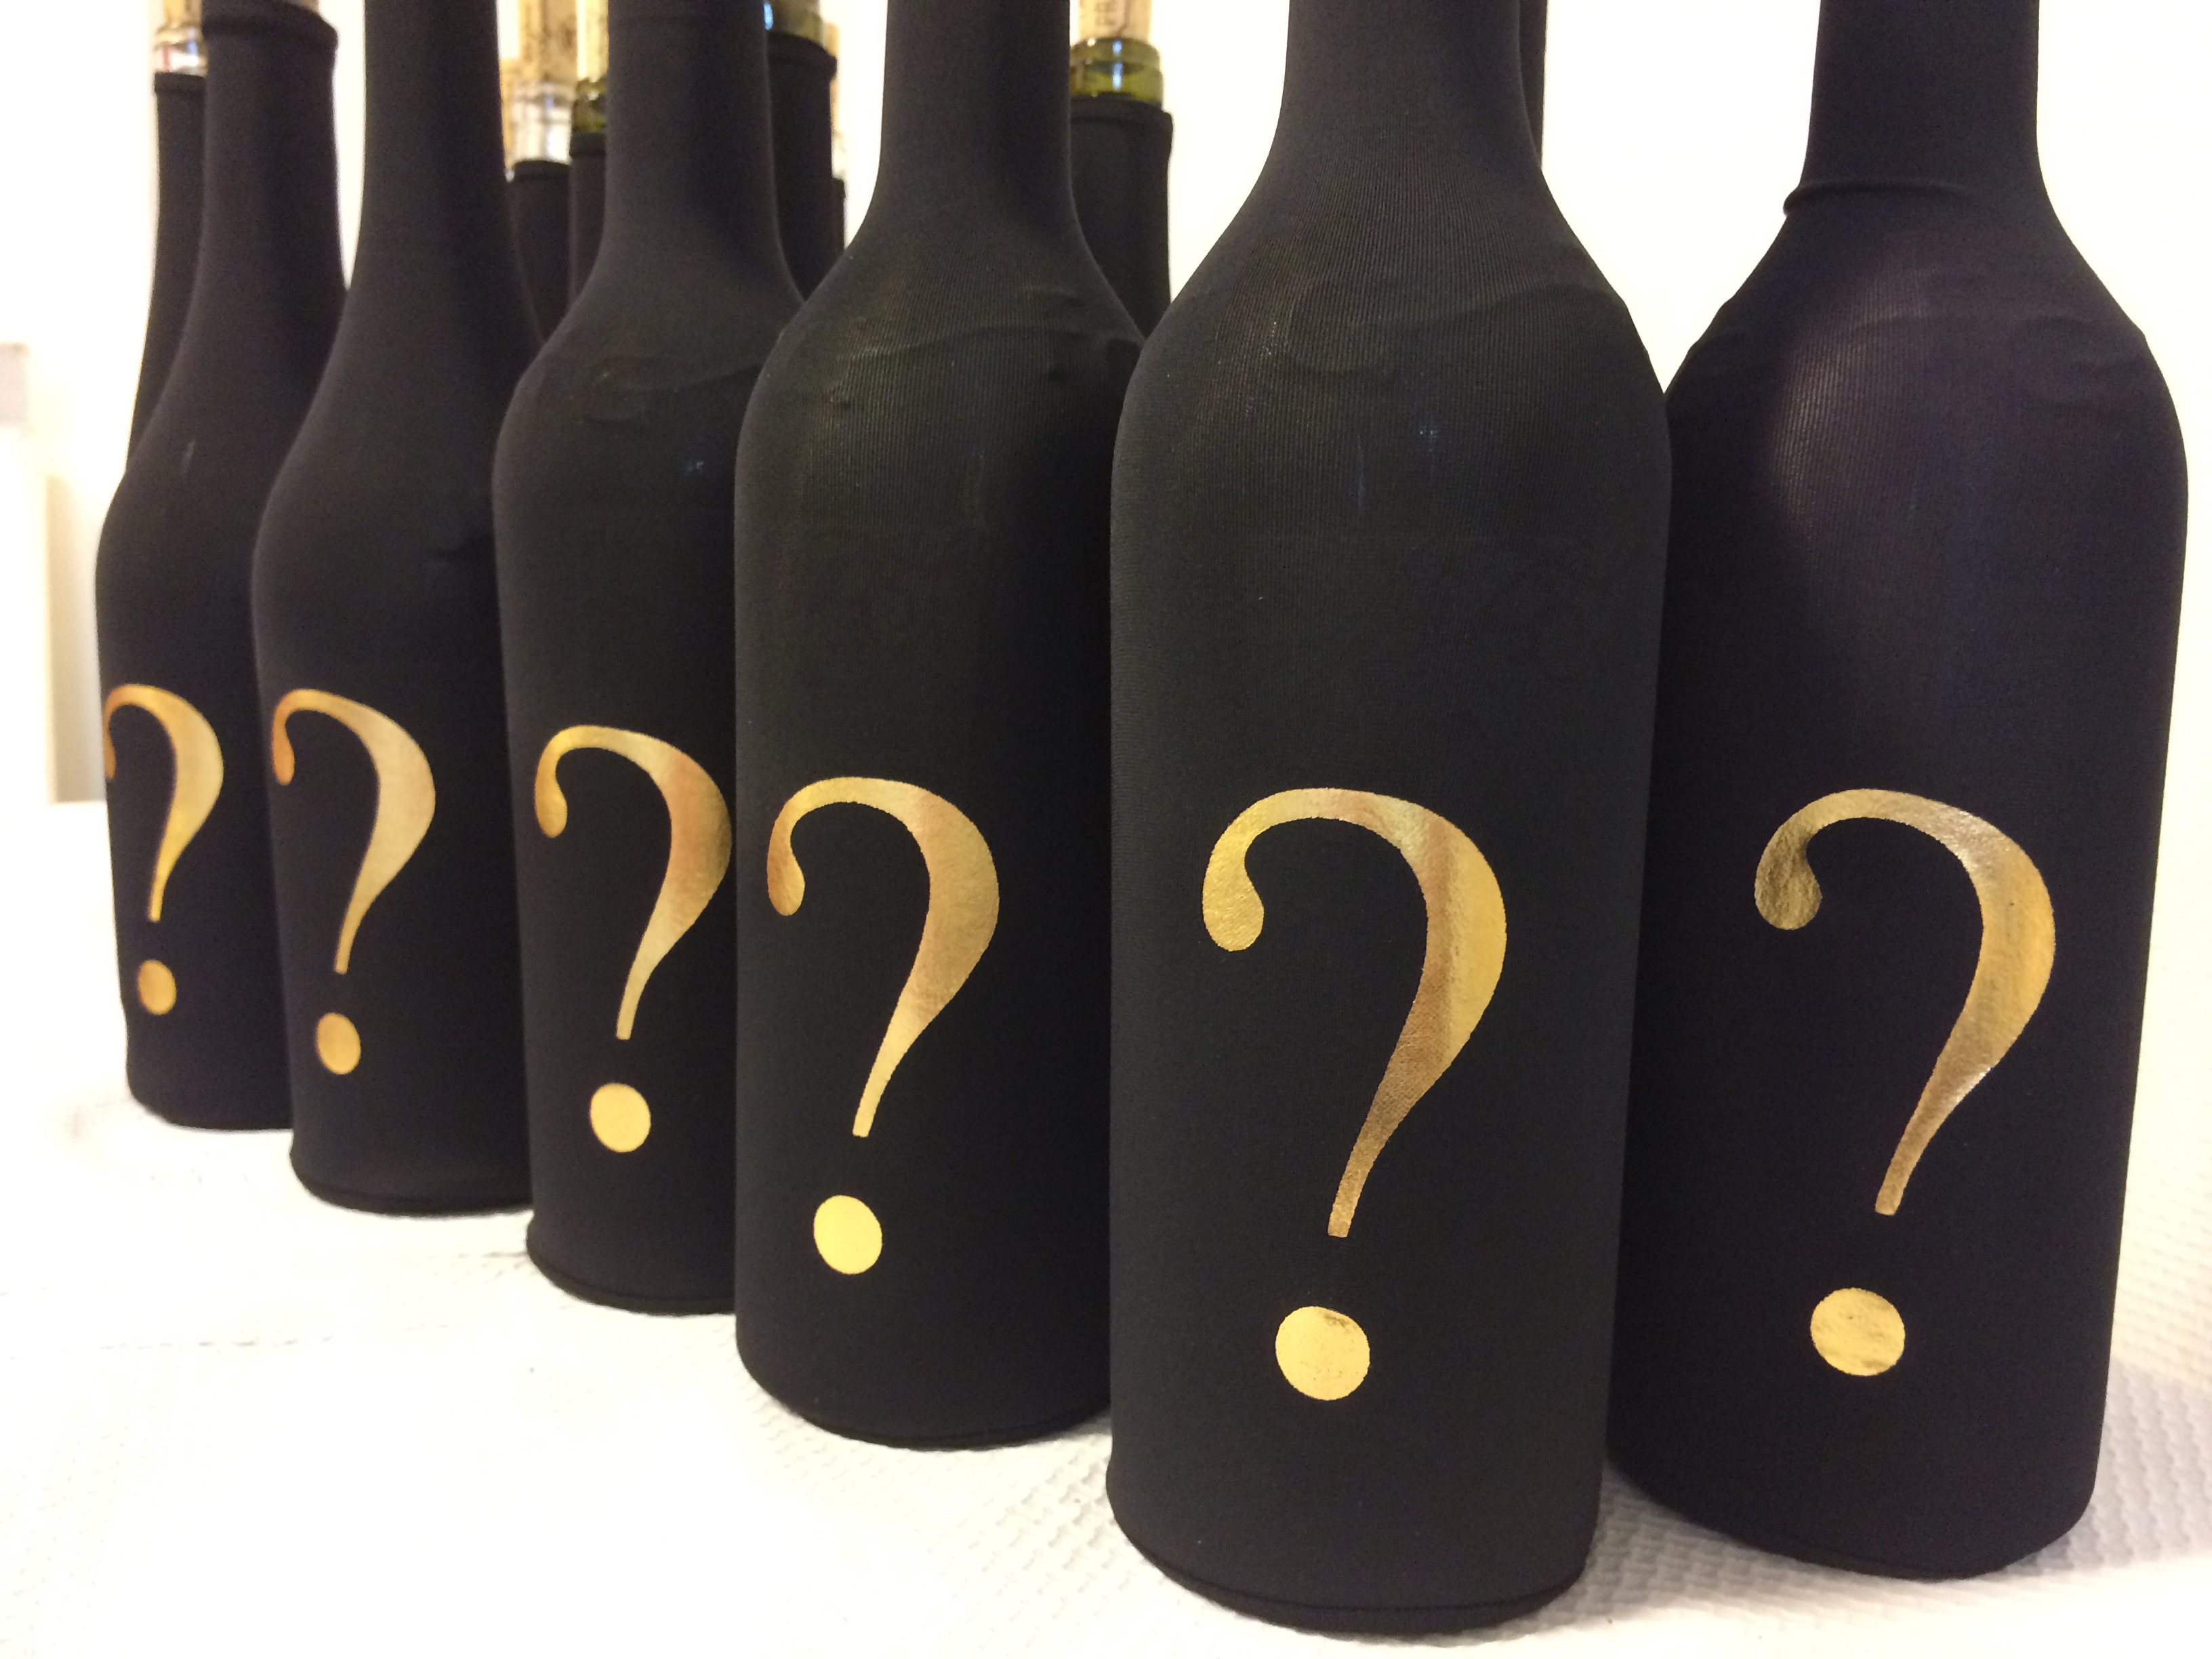 IGNPION Lot de 200 étiquettes réutilisables pour bouteilles de vin et caves blanc